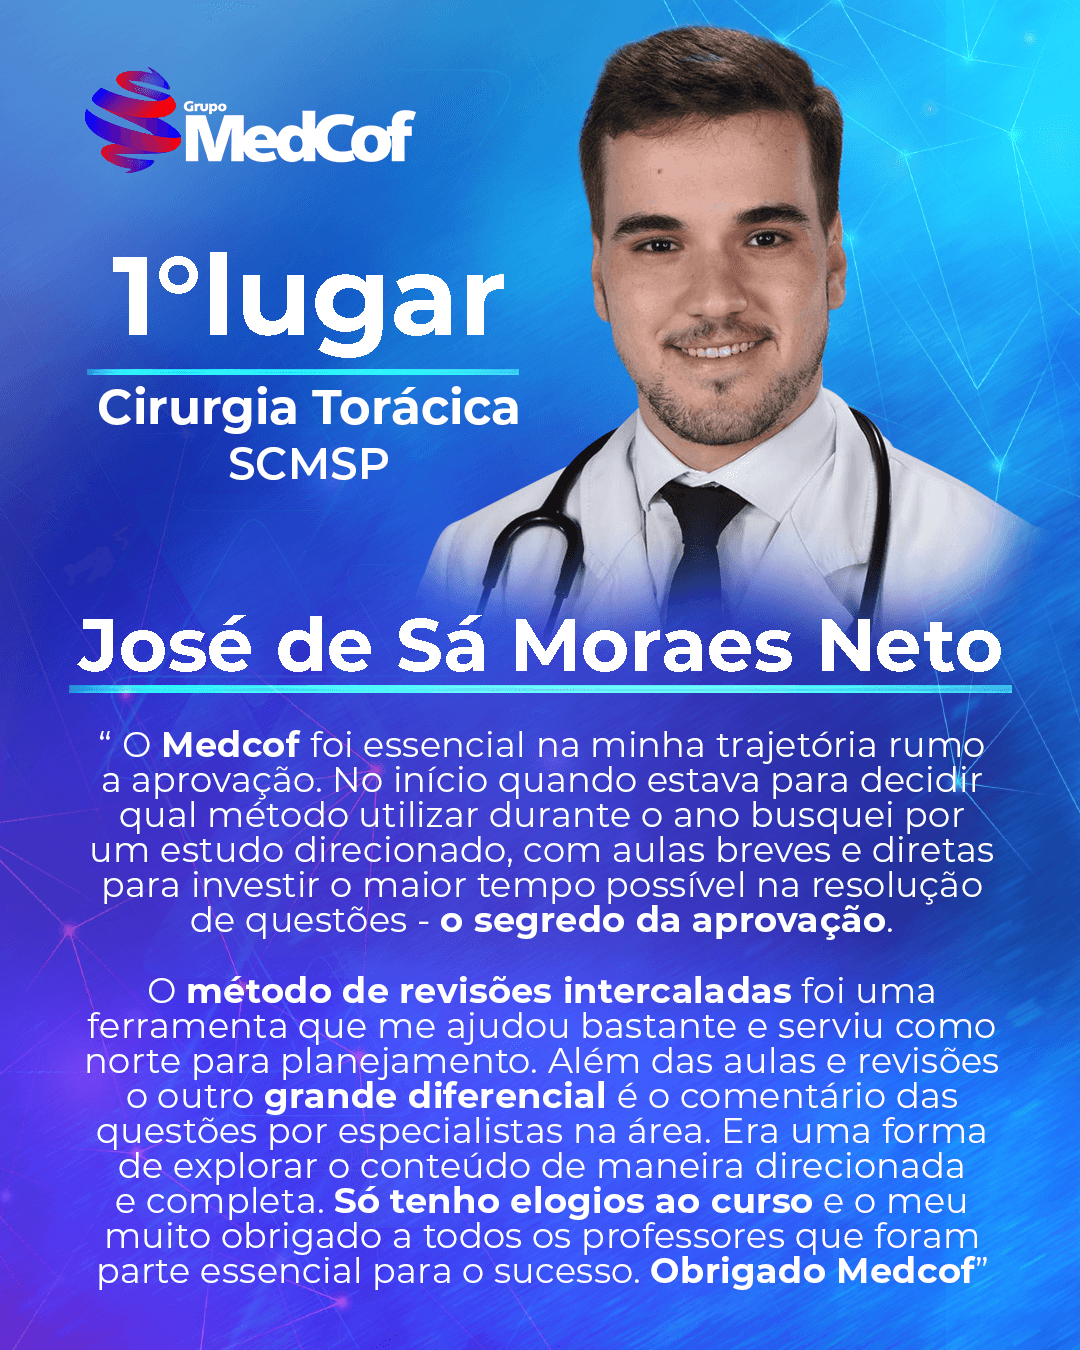 [Ads]-Aprovado-1-Jose-De-Sa-Moraes-Neto-Cirurgia Toracica